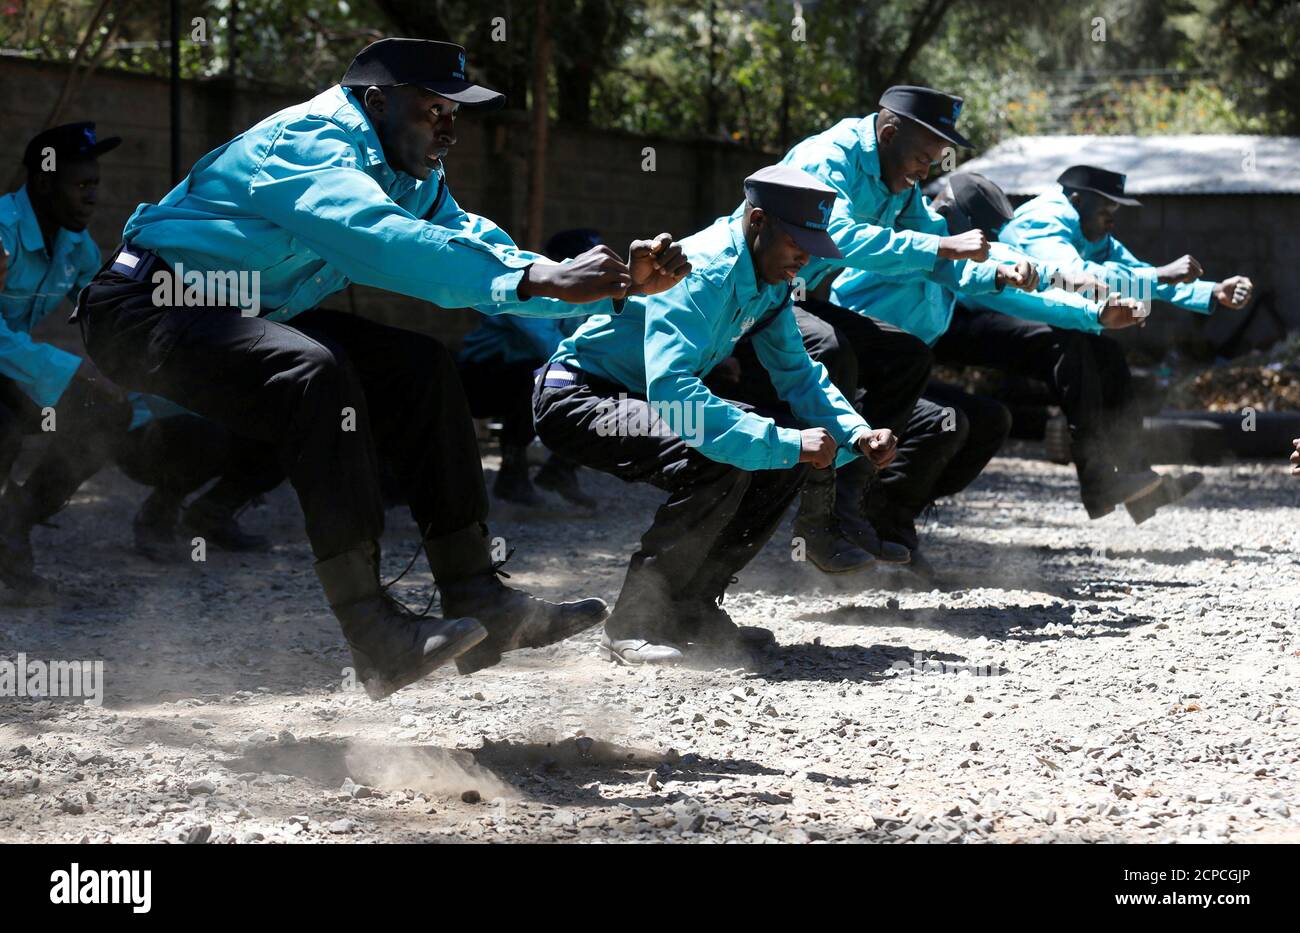 Kenianische Sicherheitskräfte nehmen an körperlicher Betätigung in Martial Arts Kampf Ausbildung bei der Chinesisch-Run Ausrichtung Sicherheitsgruppe Verbindung in Kenias Hauptstadt Nairobi, 13. März 2017. REUTERS/Thomas Mukoya TPX Bilder des Tages Stockfoto